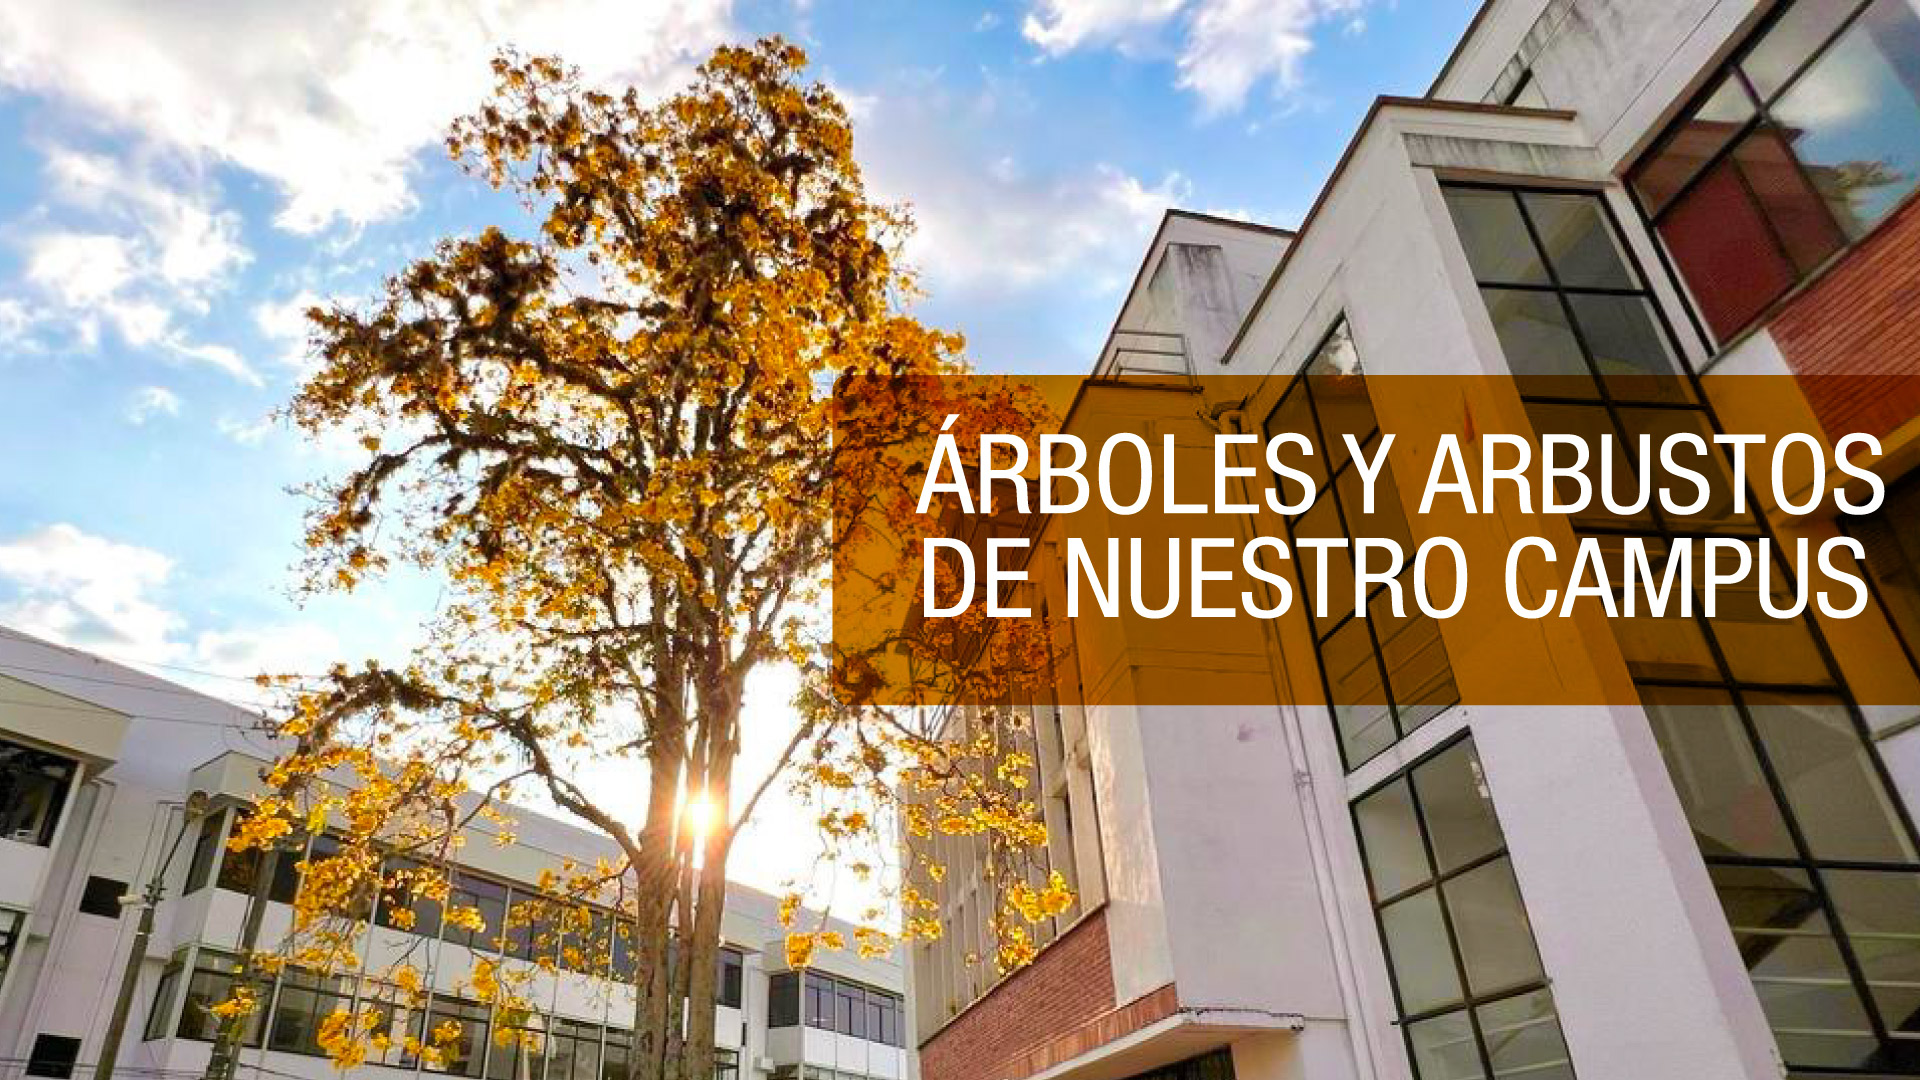 Universidad del Quindío presenta guía de árboles y arbustos para el conocimiento de su campus universitario